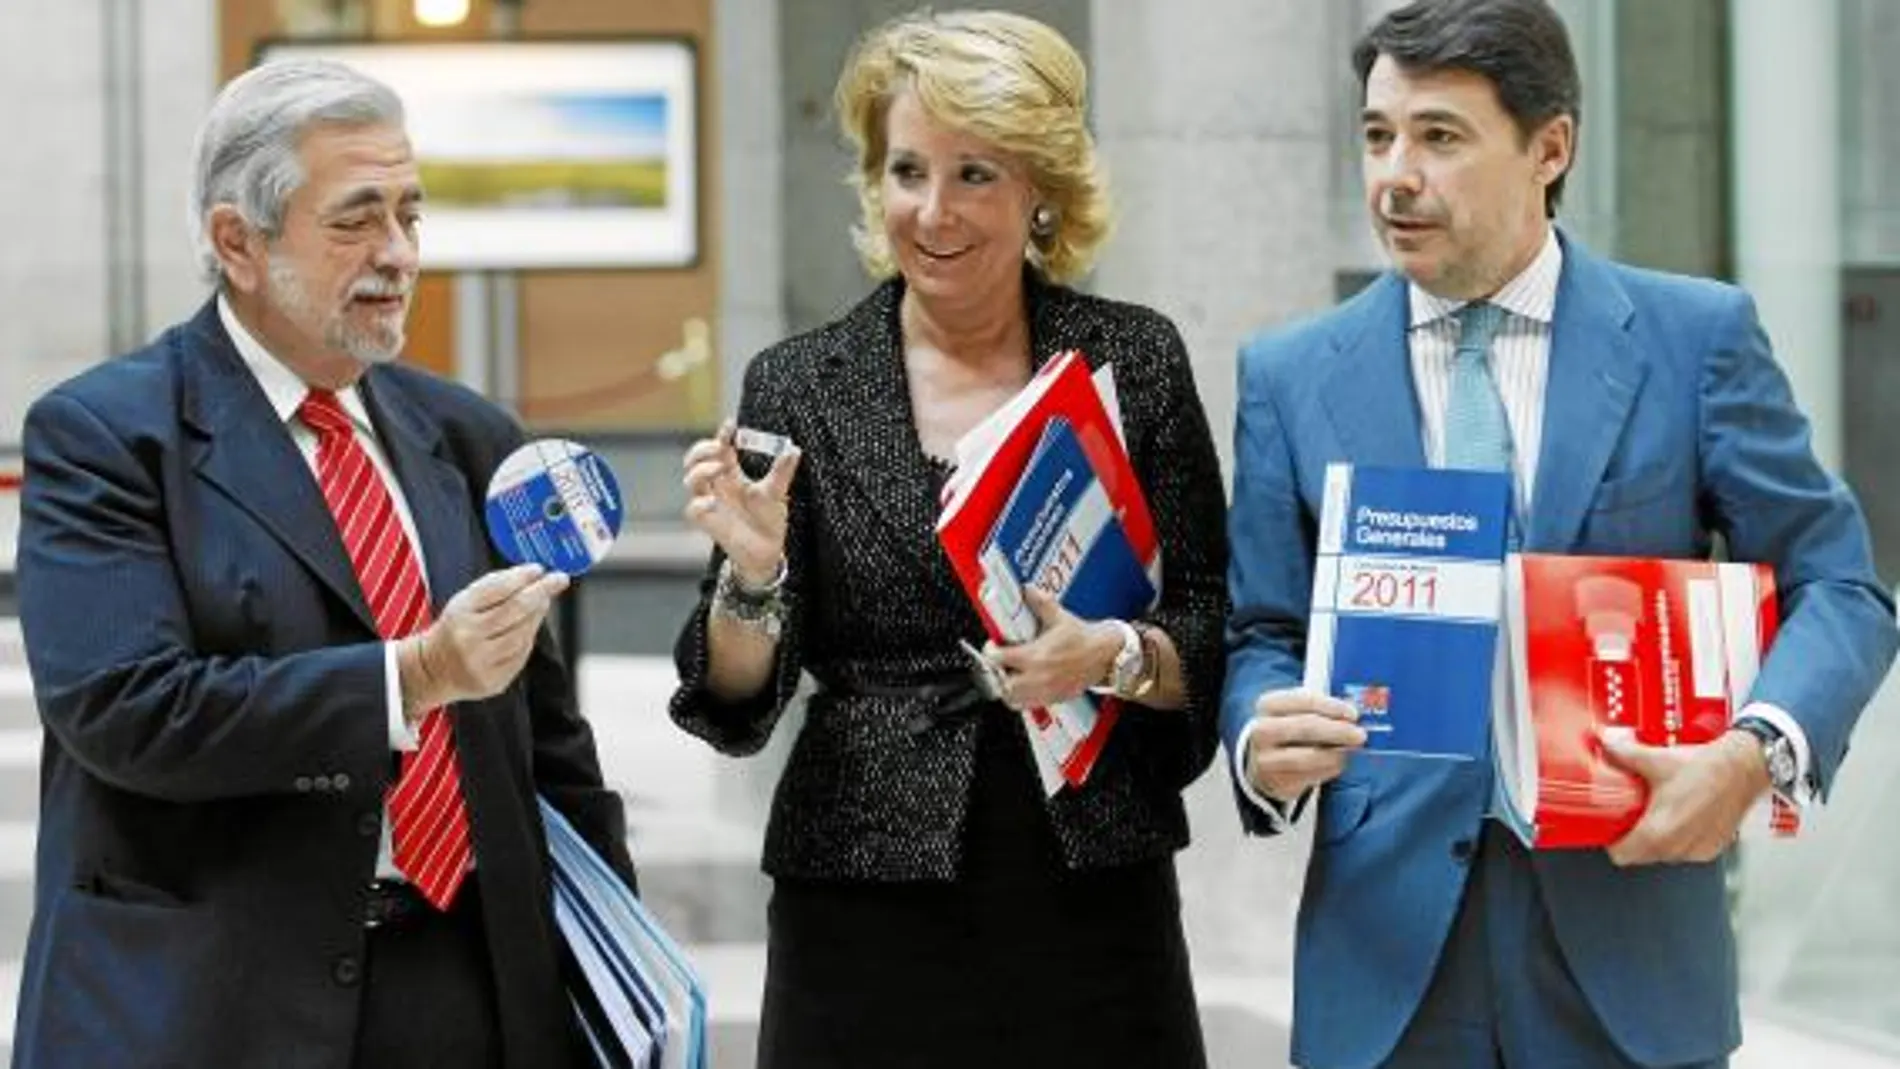 El Consejo de Gobierno aprobó ayer las cuentas para 2011 que después hizo públicas Esperanza Aguirre acompañada de Ignacio González y de Antonio Beteta